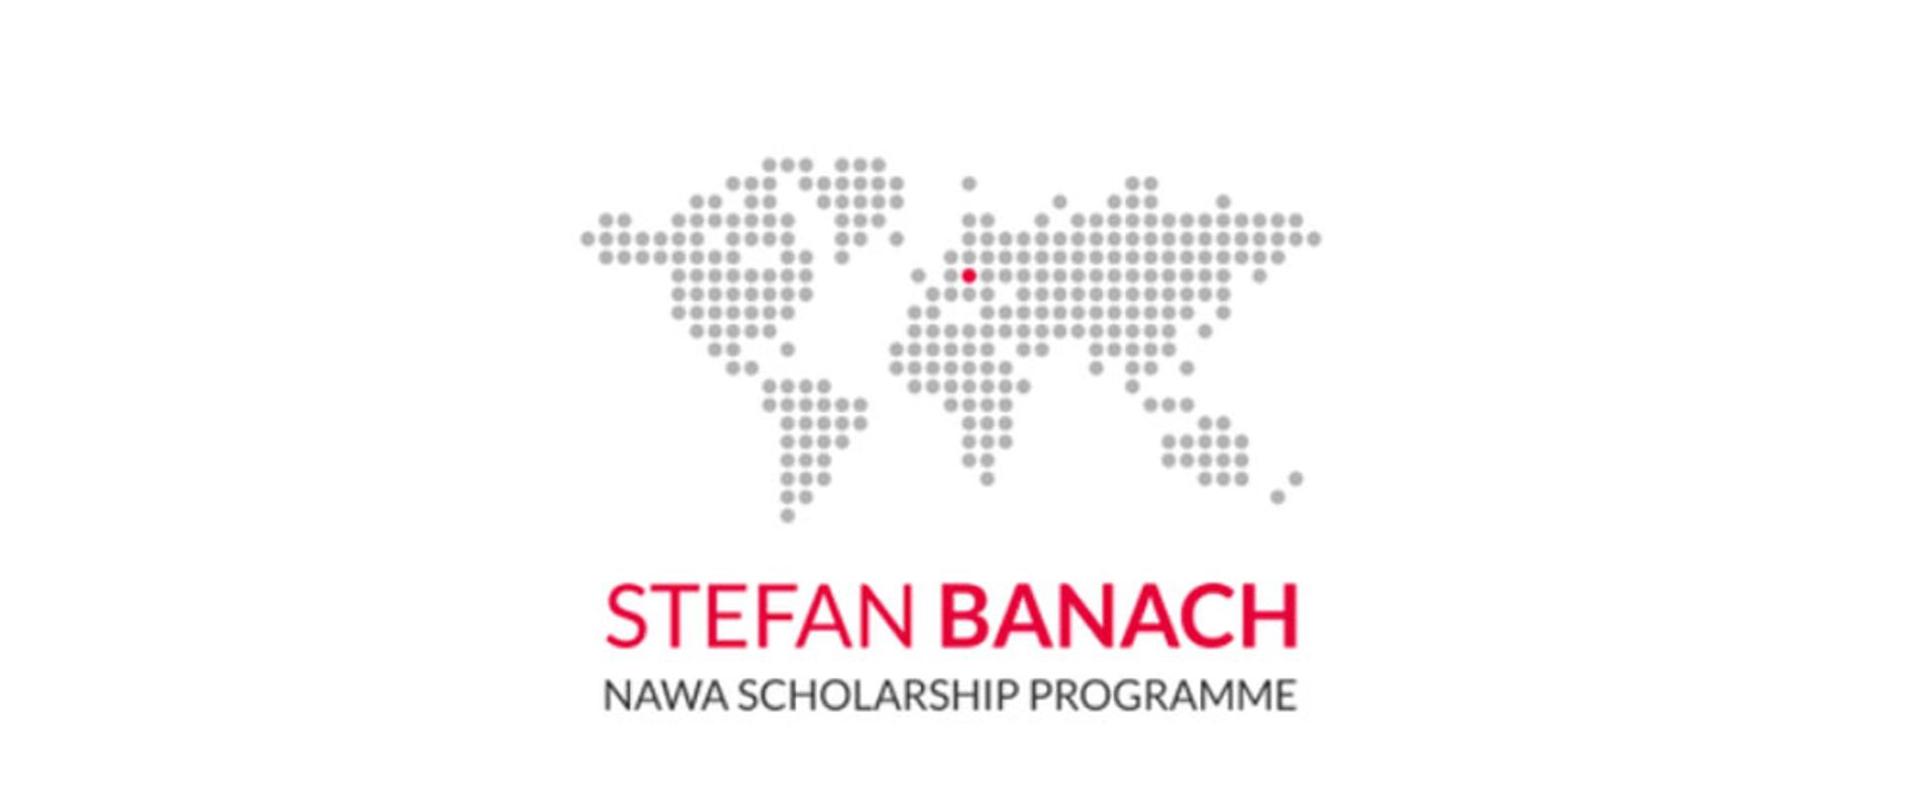 Grafika promująca program stypendialny Banach NAWA.